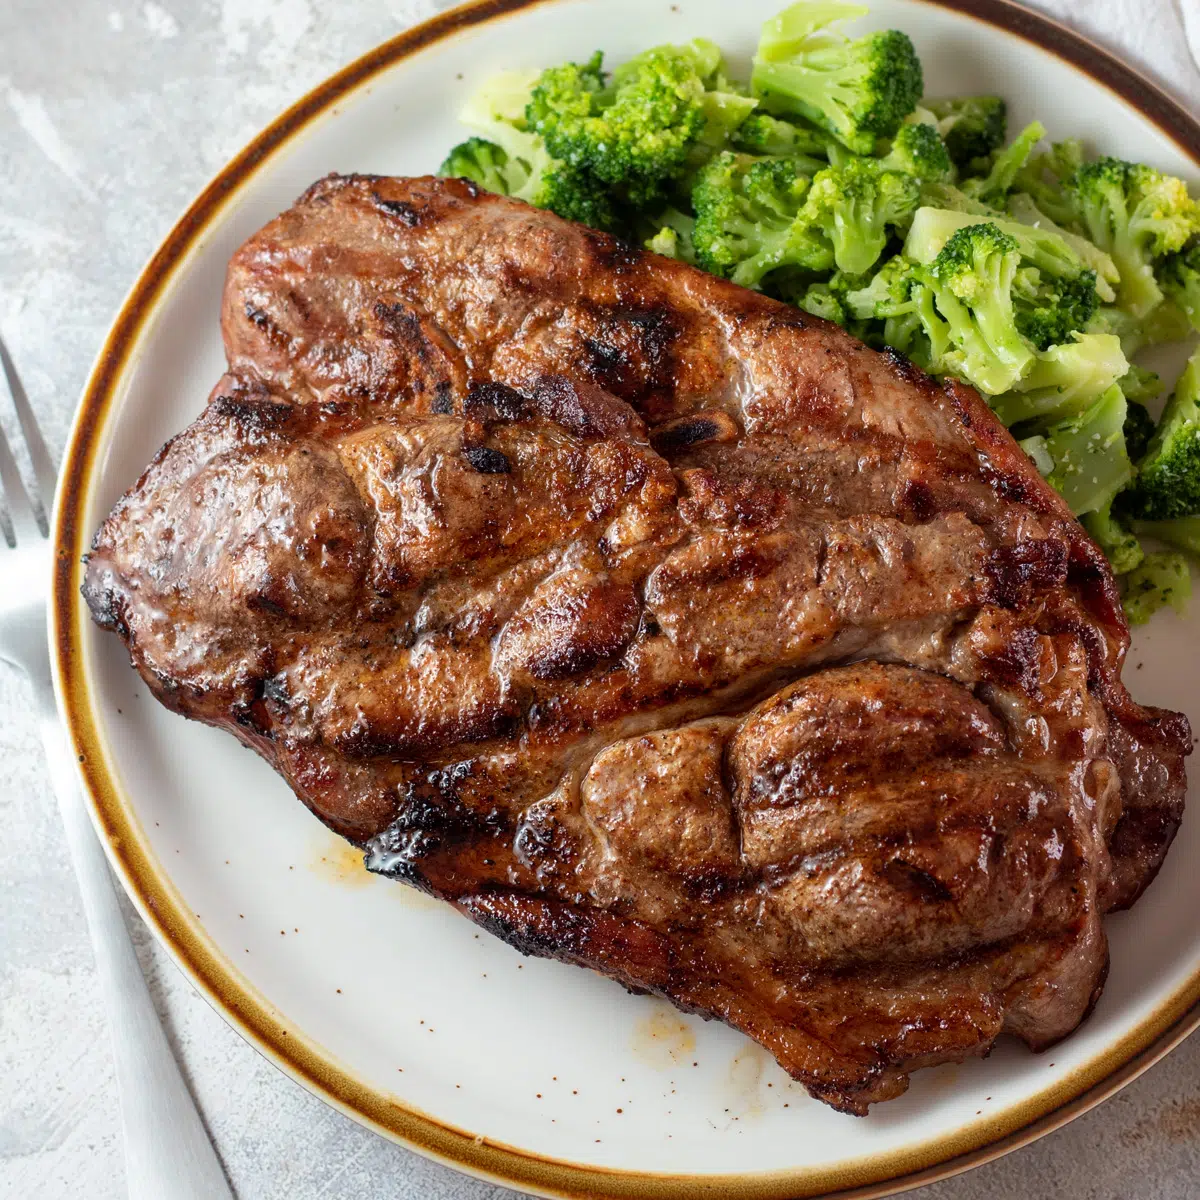 Succose bistecche di maiale alla griglia su piatto marrone chiaro con broccoli al vapore.